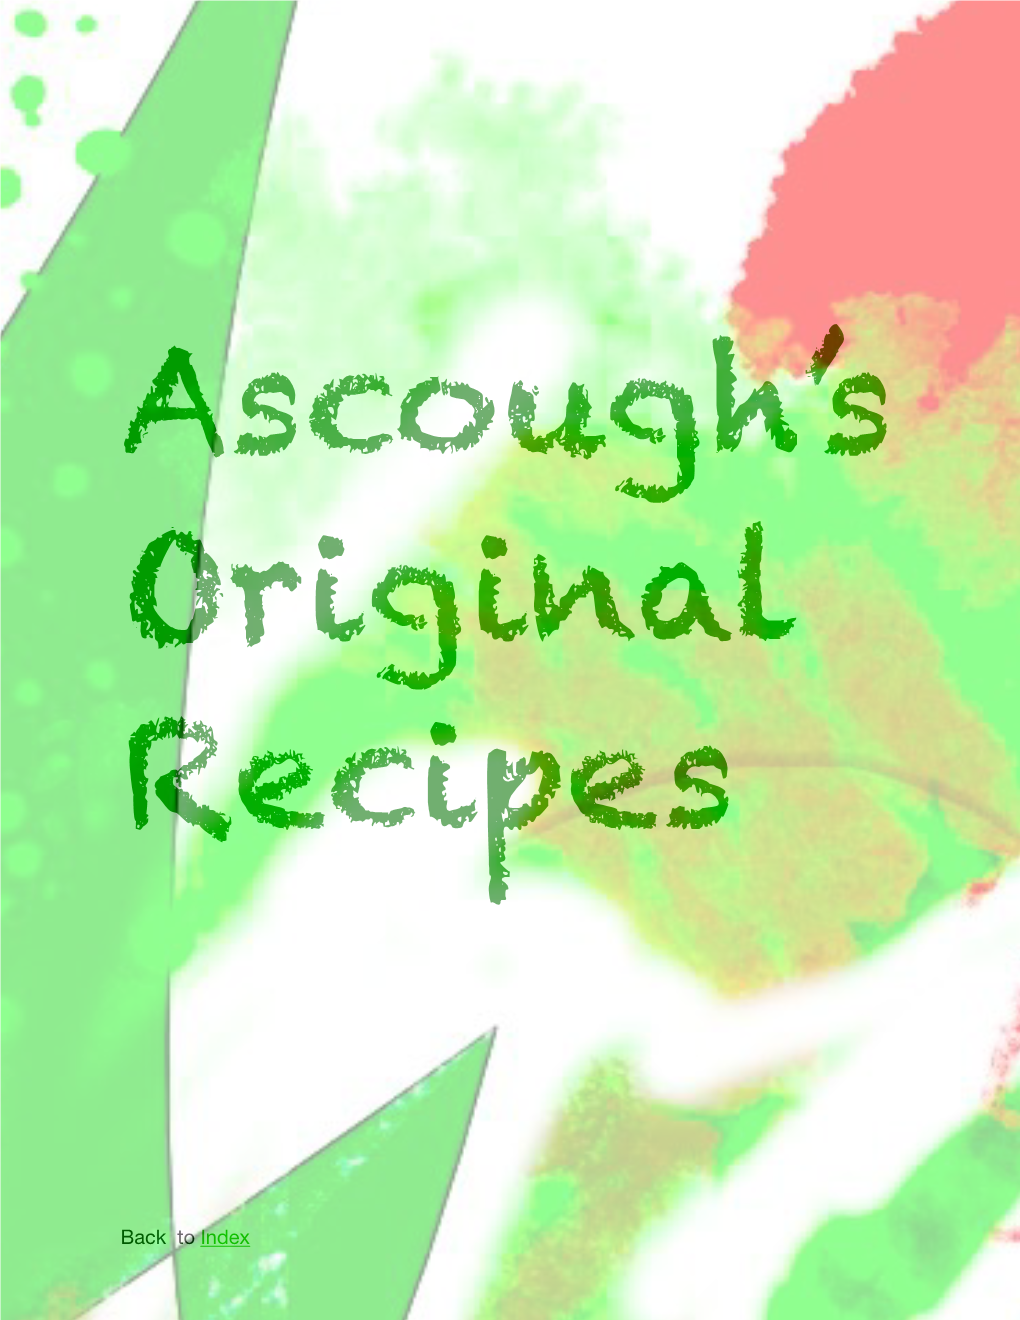 Original Recipes in Pages (Original)